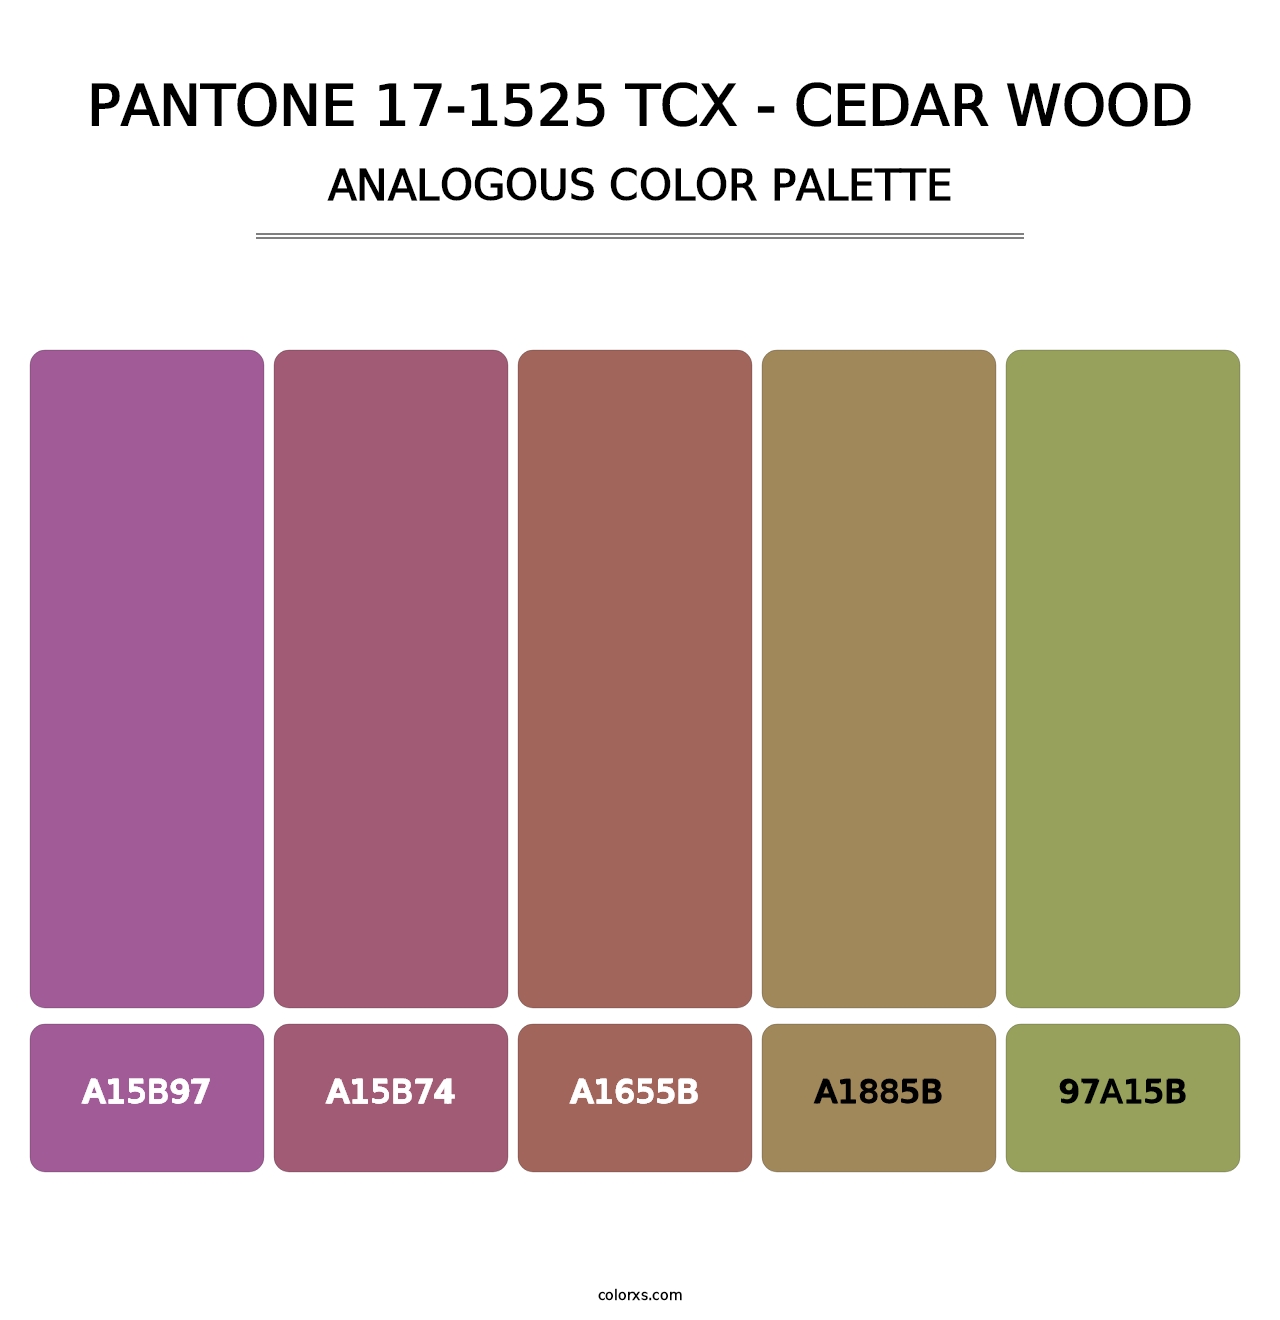 PANTONE 17-1525 TCX - Cedar Wood - Analogous Color Palette